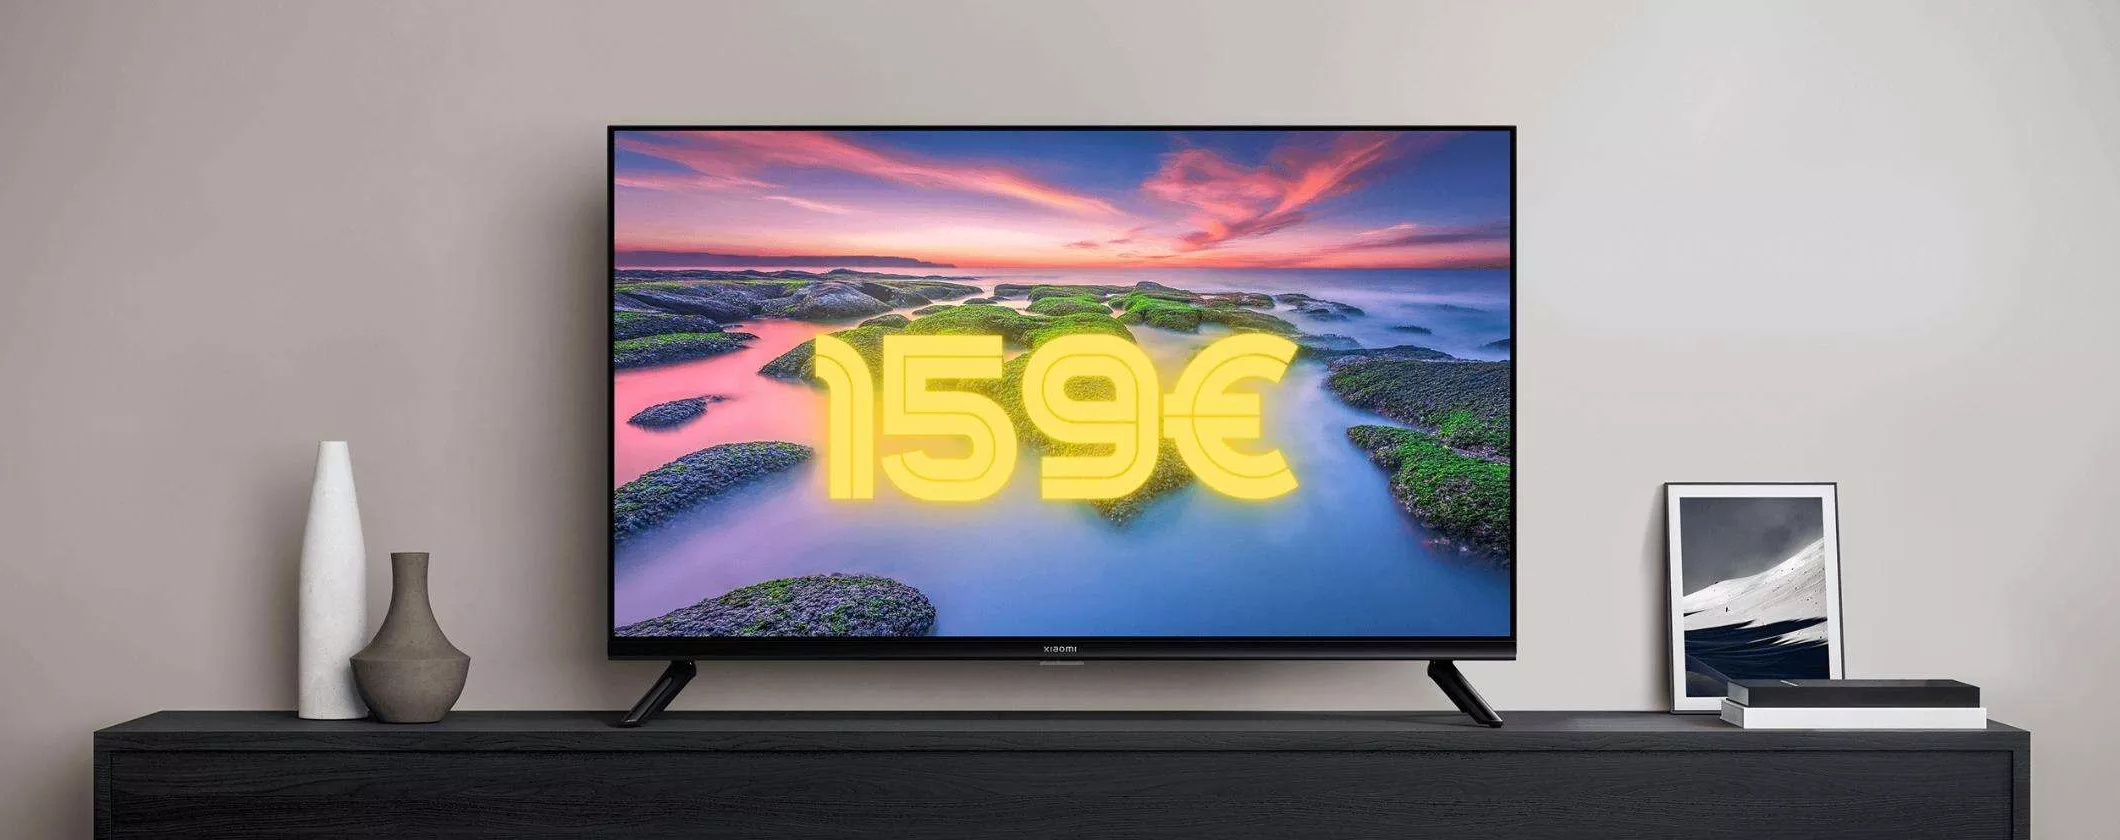 Xiaomi TV A2: visione senza limiti a 159€